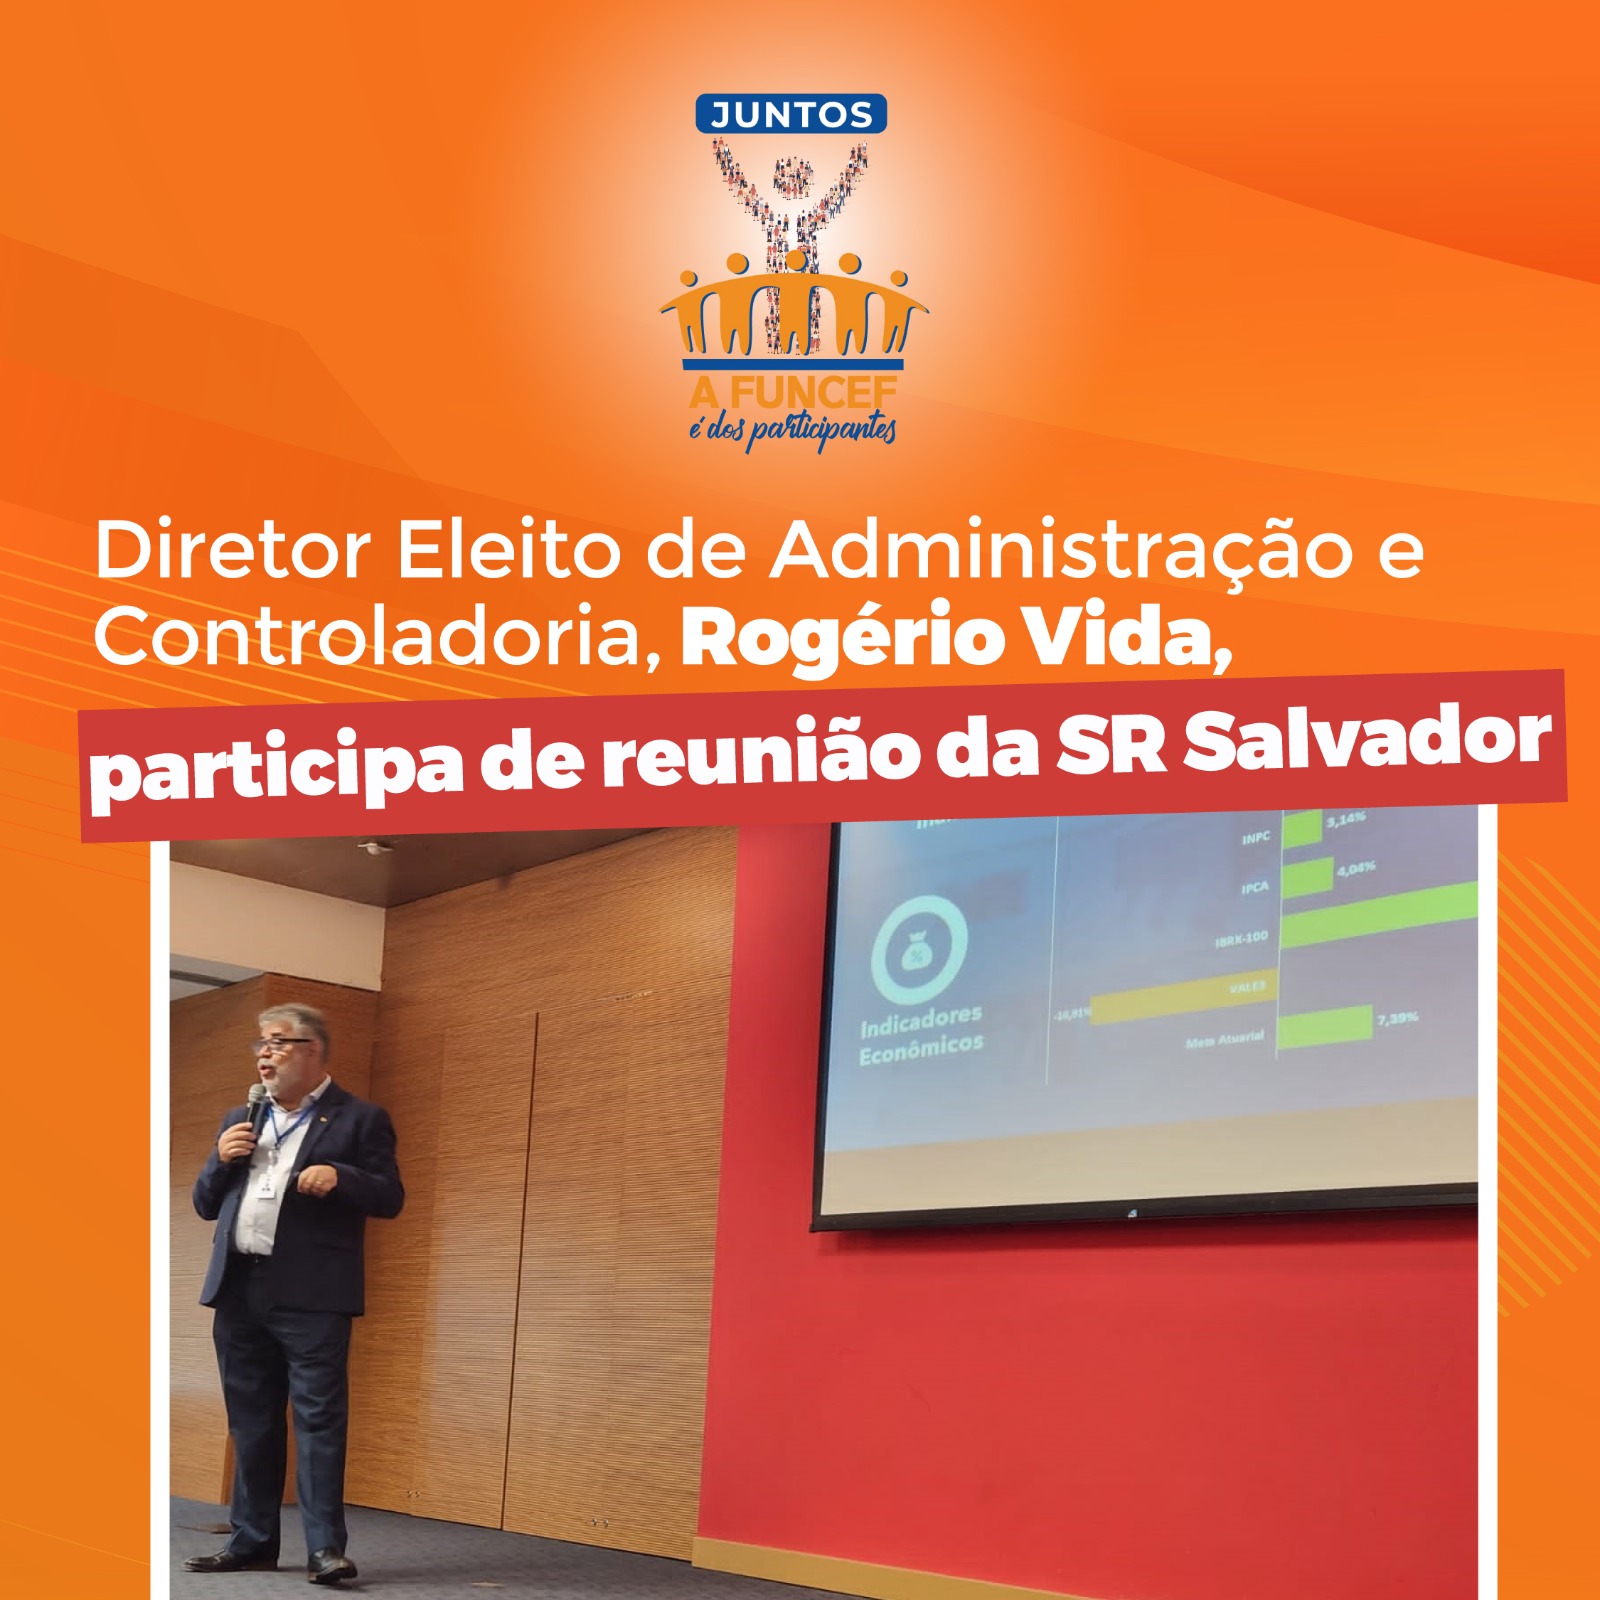 FUNCEF - Diretor Eleito de Administração e Controladoria, Rogério Vida, participa de reunião da SR Salvador